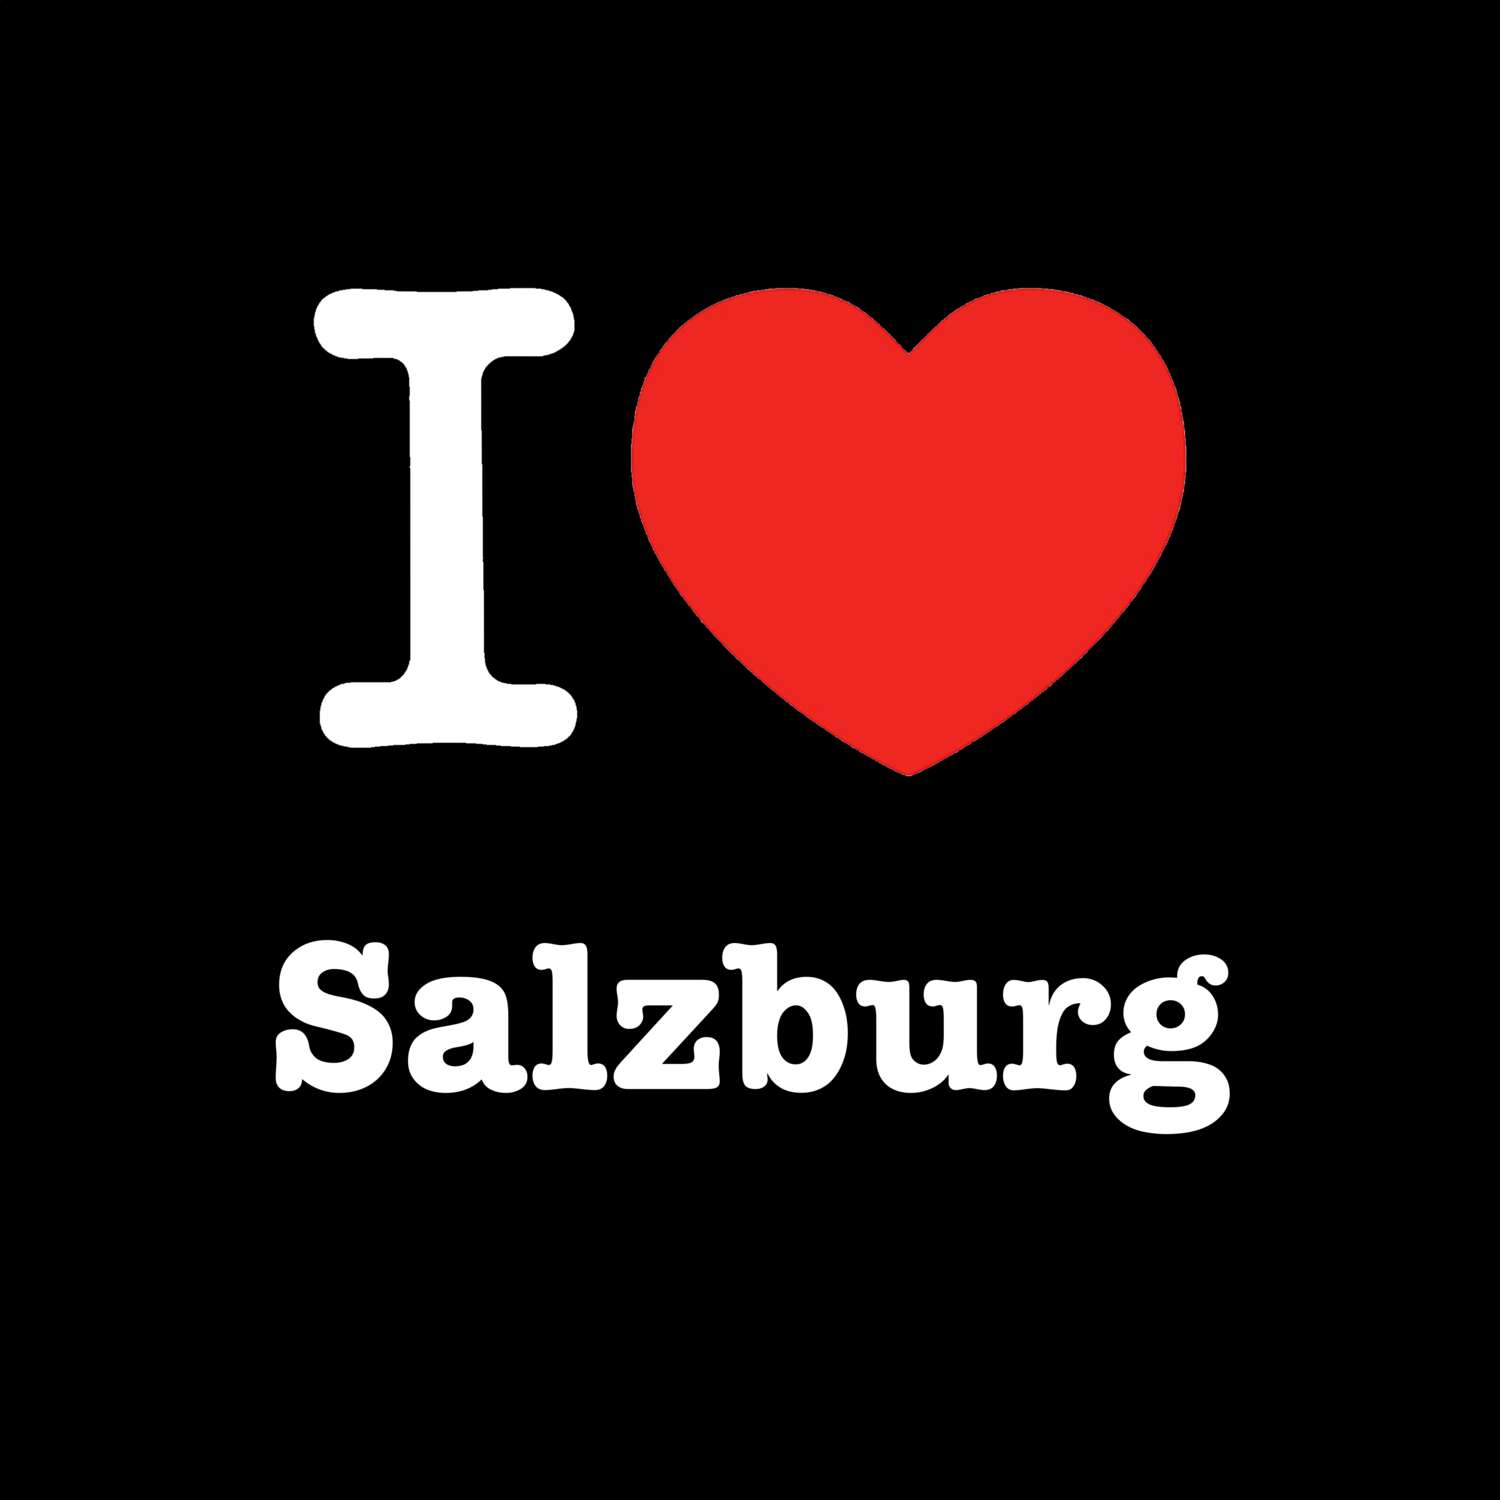 Salzburg T-Shirt »I love«